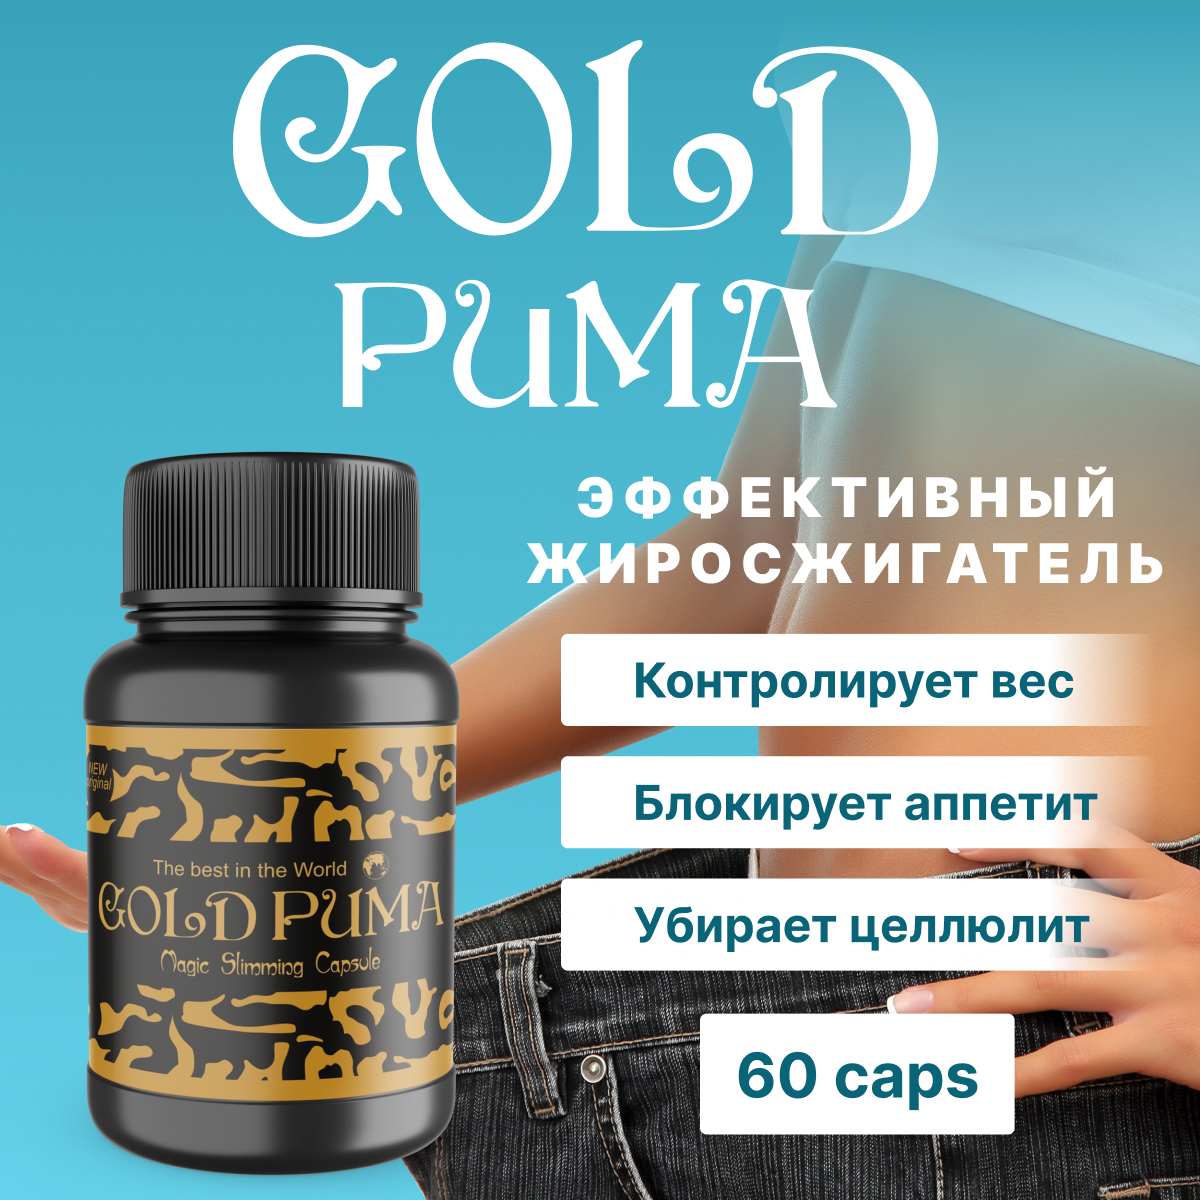 Купить Комплекс для похудения Gold Puma Голд Пума, 60 капсул